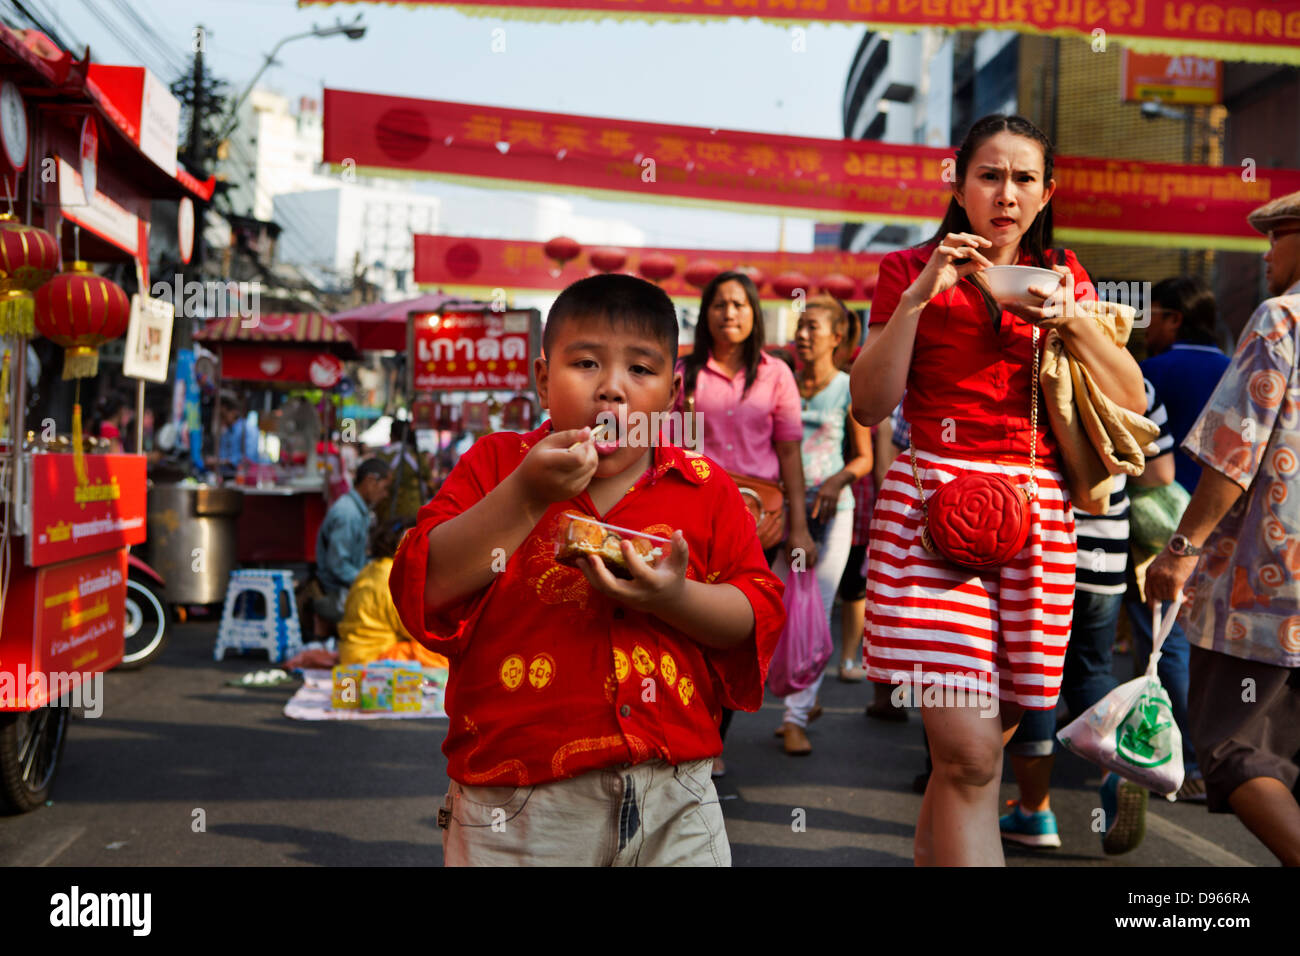 Fat Boy de comer en la calle en las celebraciones del Año Nuevo en el barrio chino de Bangkok Foto de stock